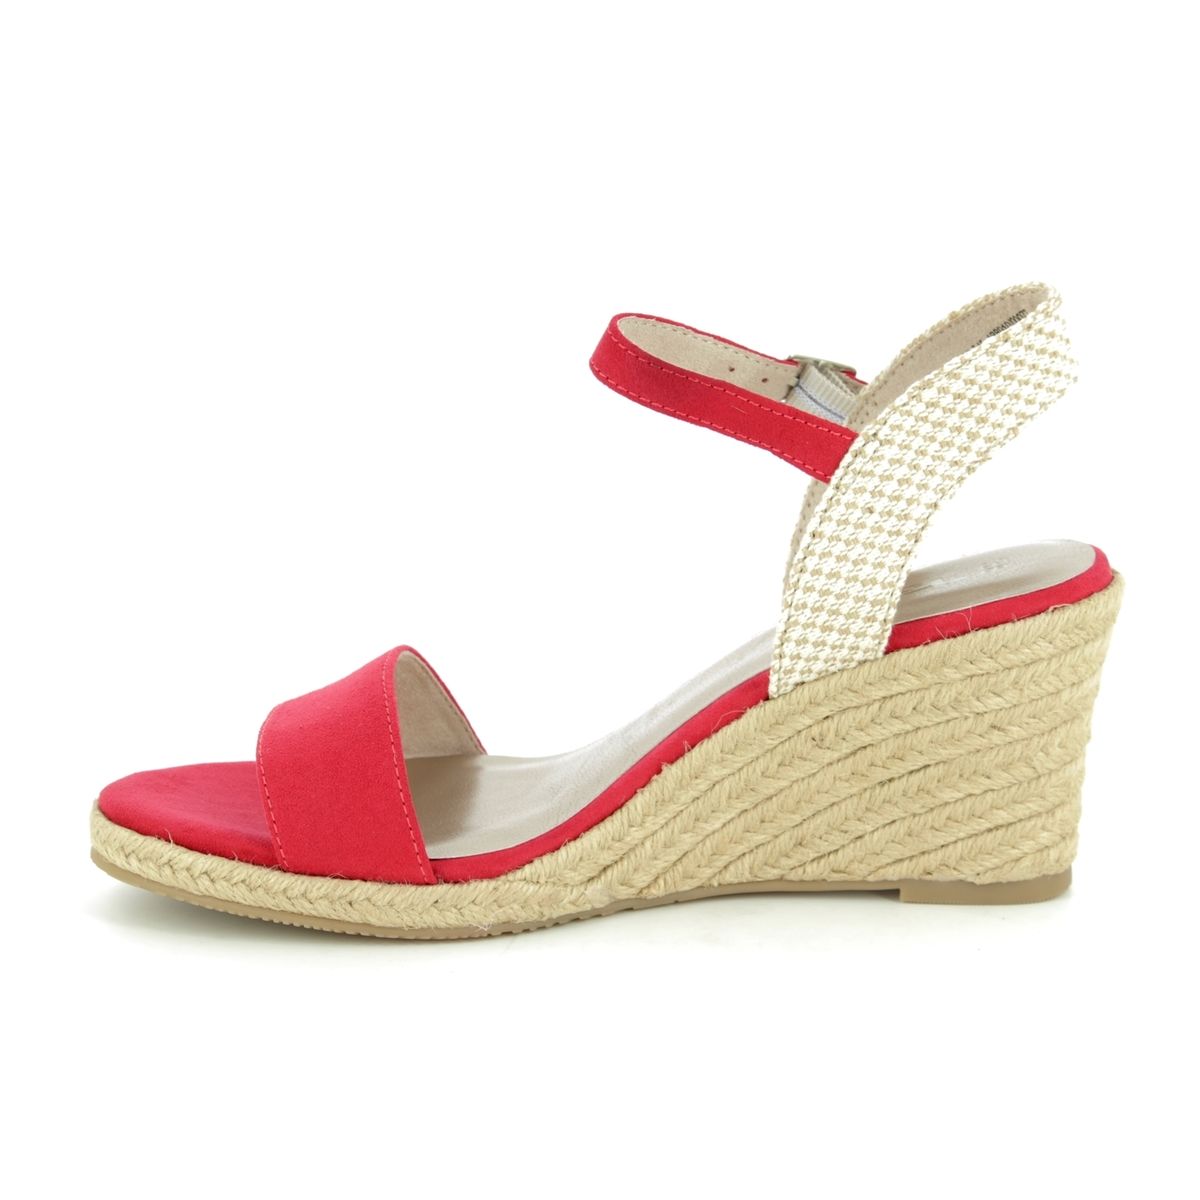 Tamaris Livia 91 28300-22-545 Red multi Wedge Sandals